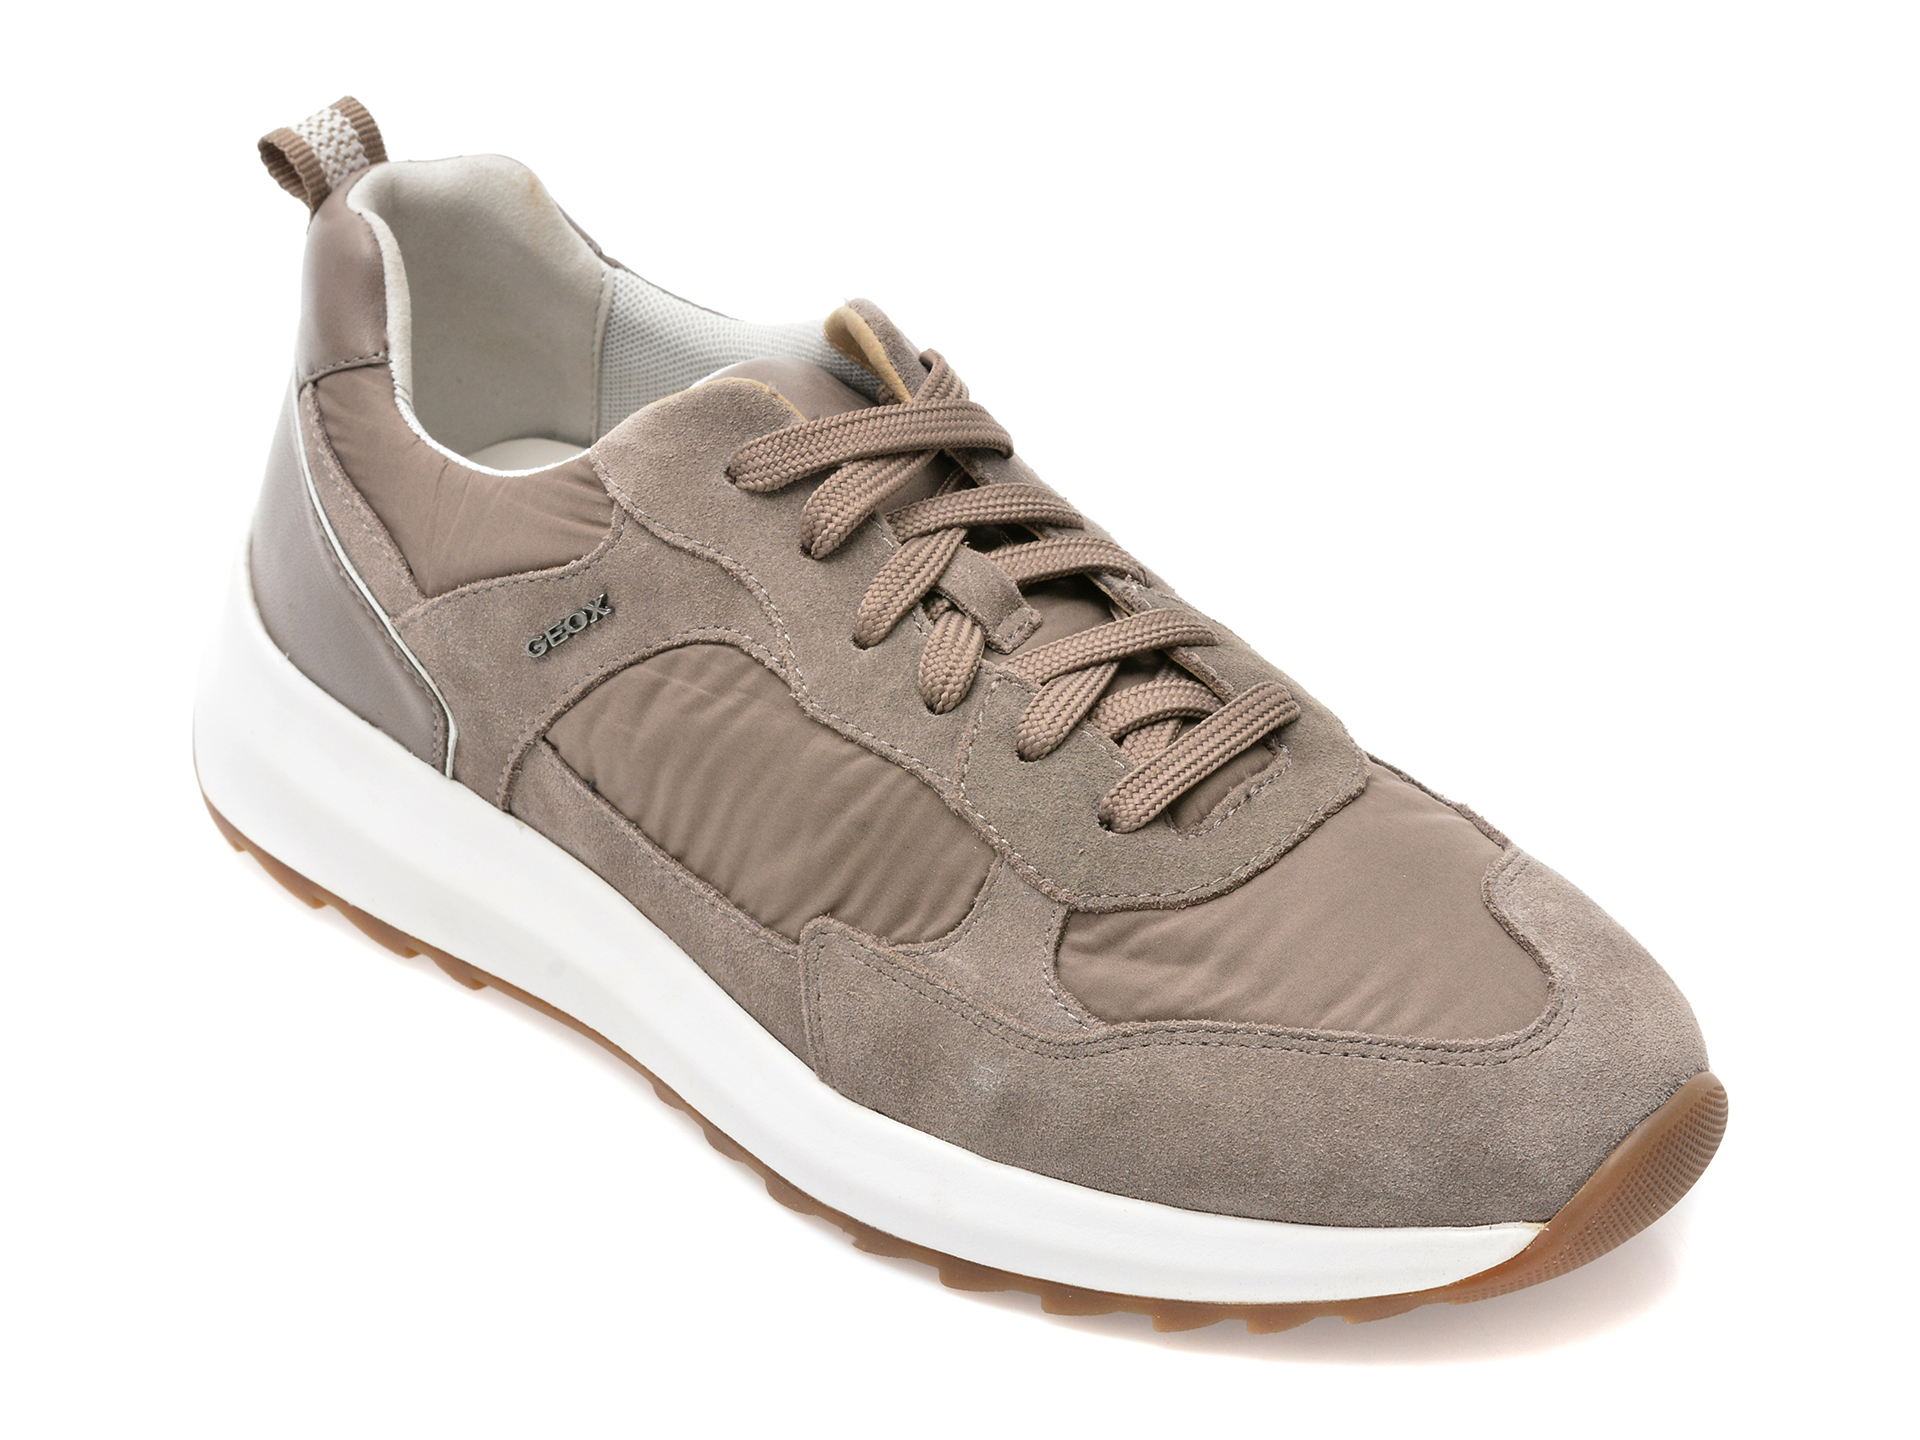 Pantofi sport GEOX gri, U25E4A, din material textil si piele naturala /barbati/pantofi